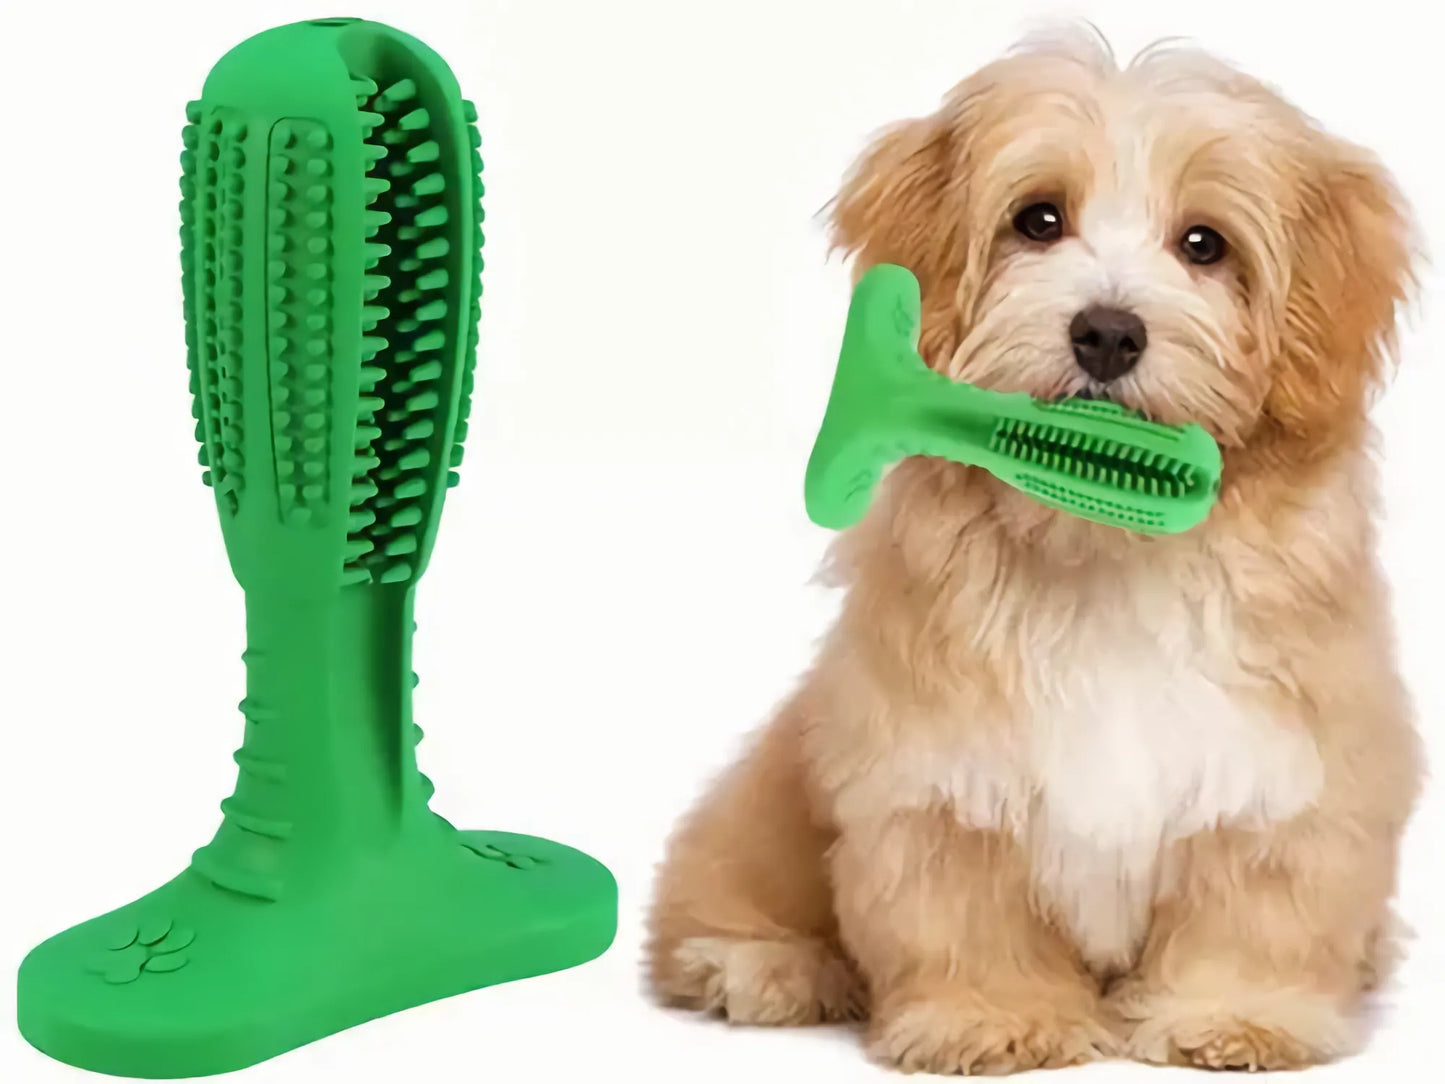 Juguete Cepillo De Dientes Para Perro Limpieza Dental